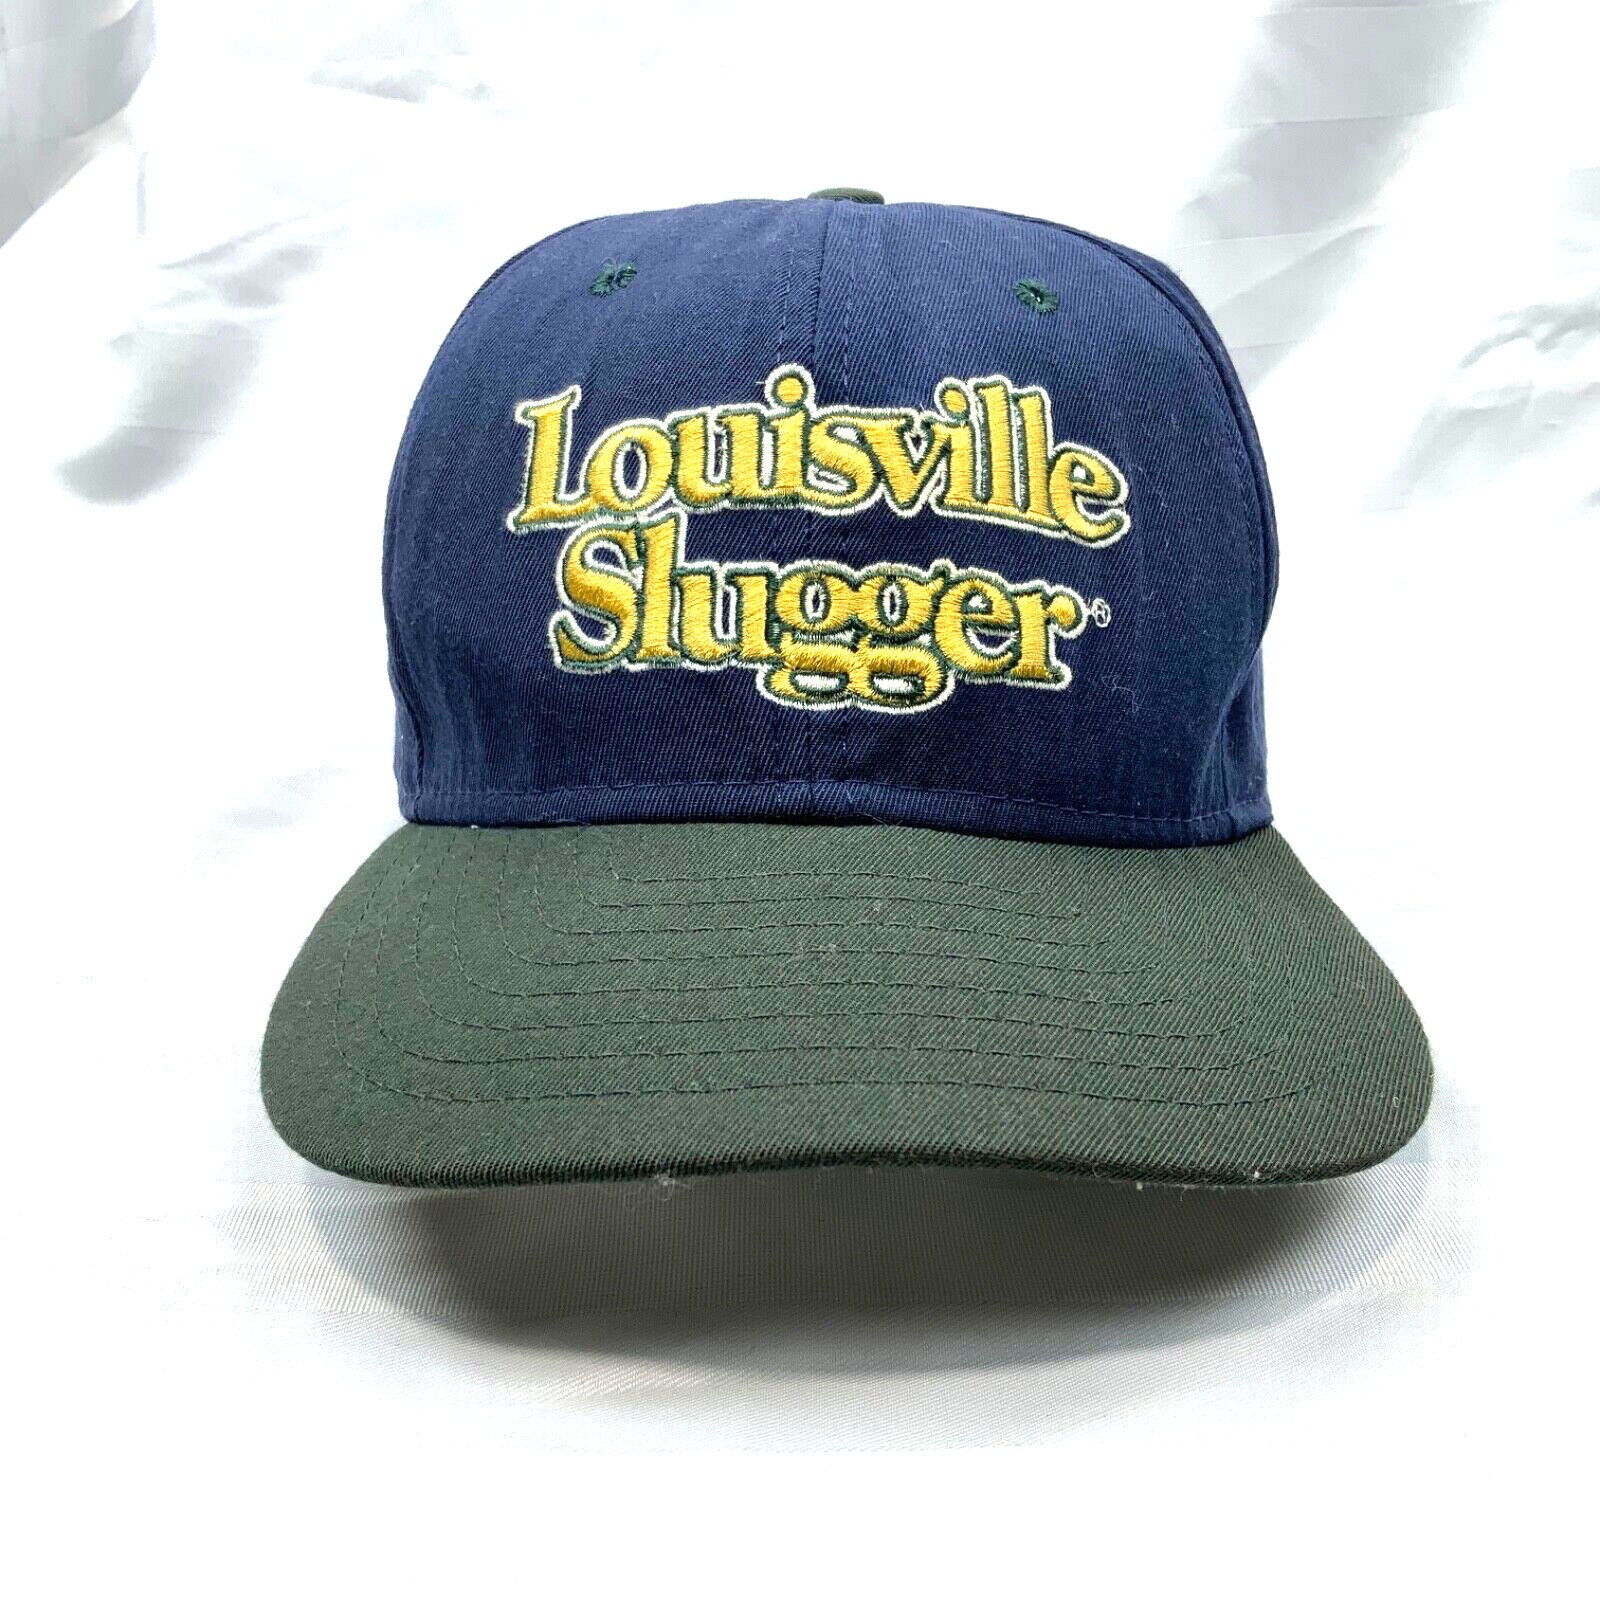 Vintage Louisville Slugger New Era Snapback Hat Cap Adjustable 